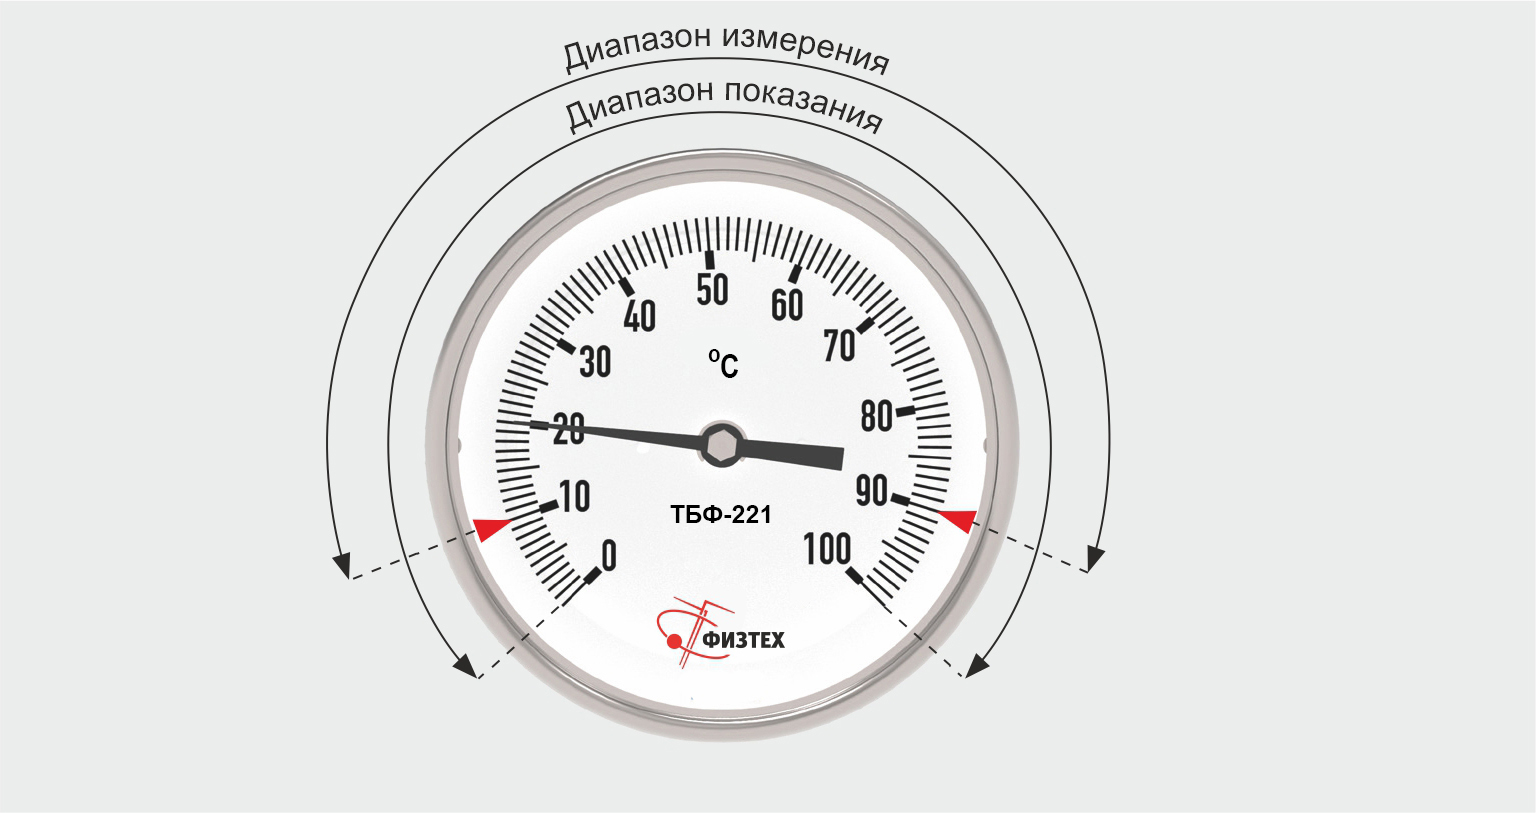 Термометры биметаллические коррозионностойкие ТБф-223 IP65 с возможностью гидрозаполнения (Диаметр: 100 мм, 160 мм)